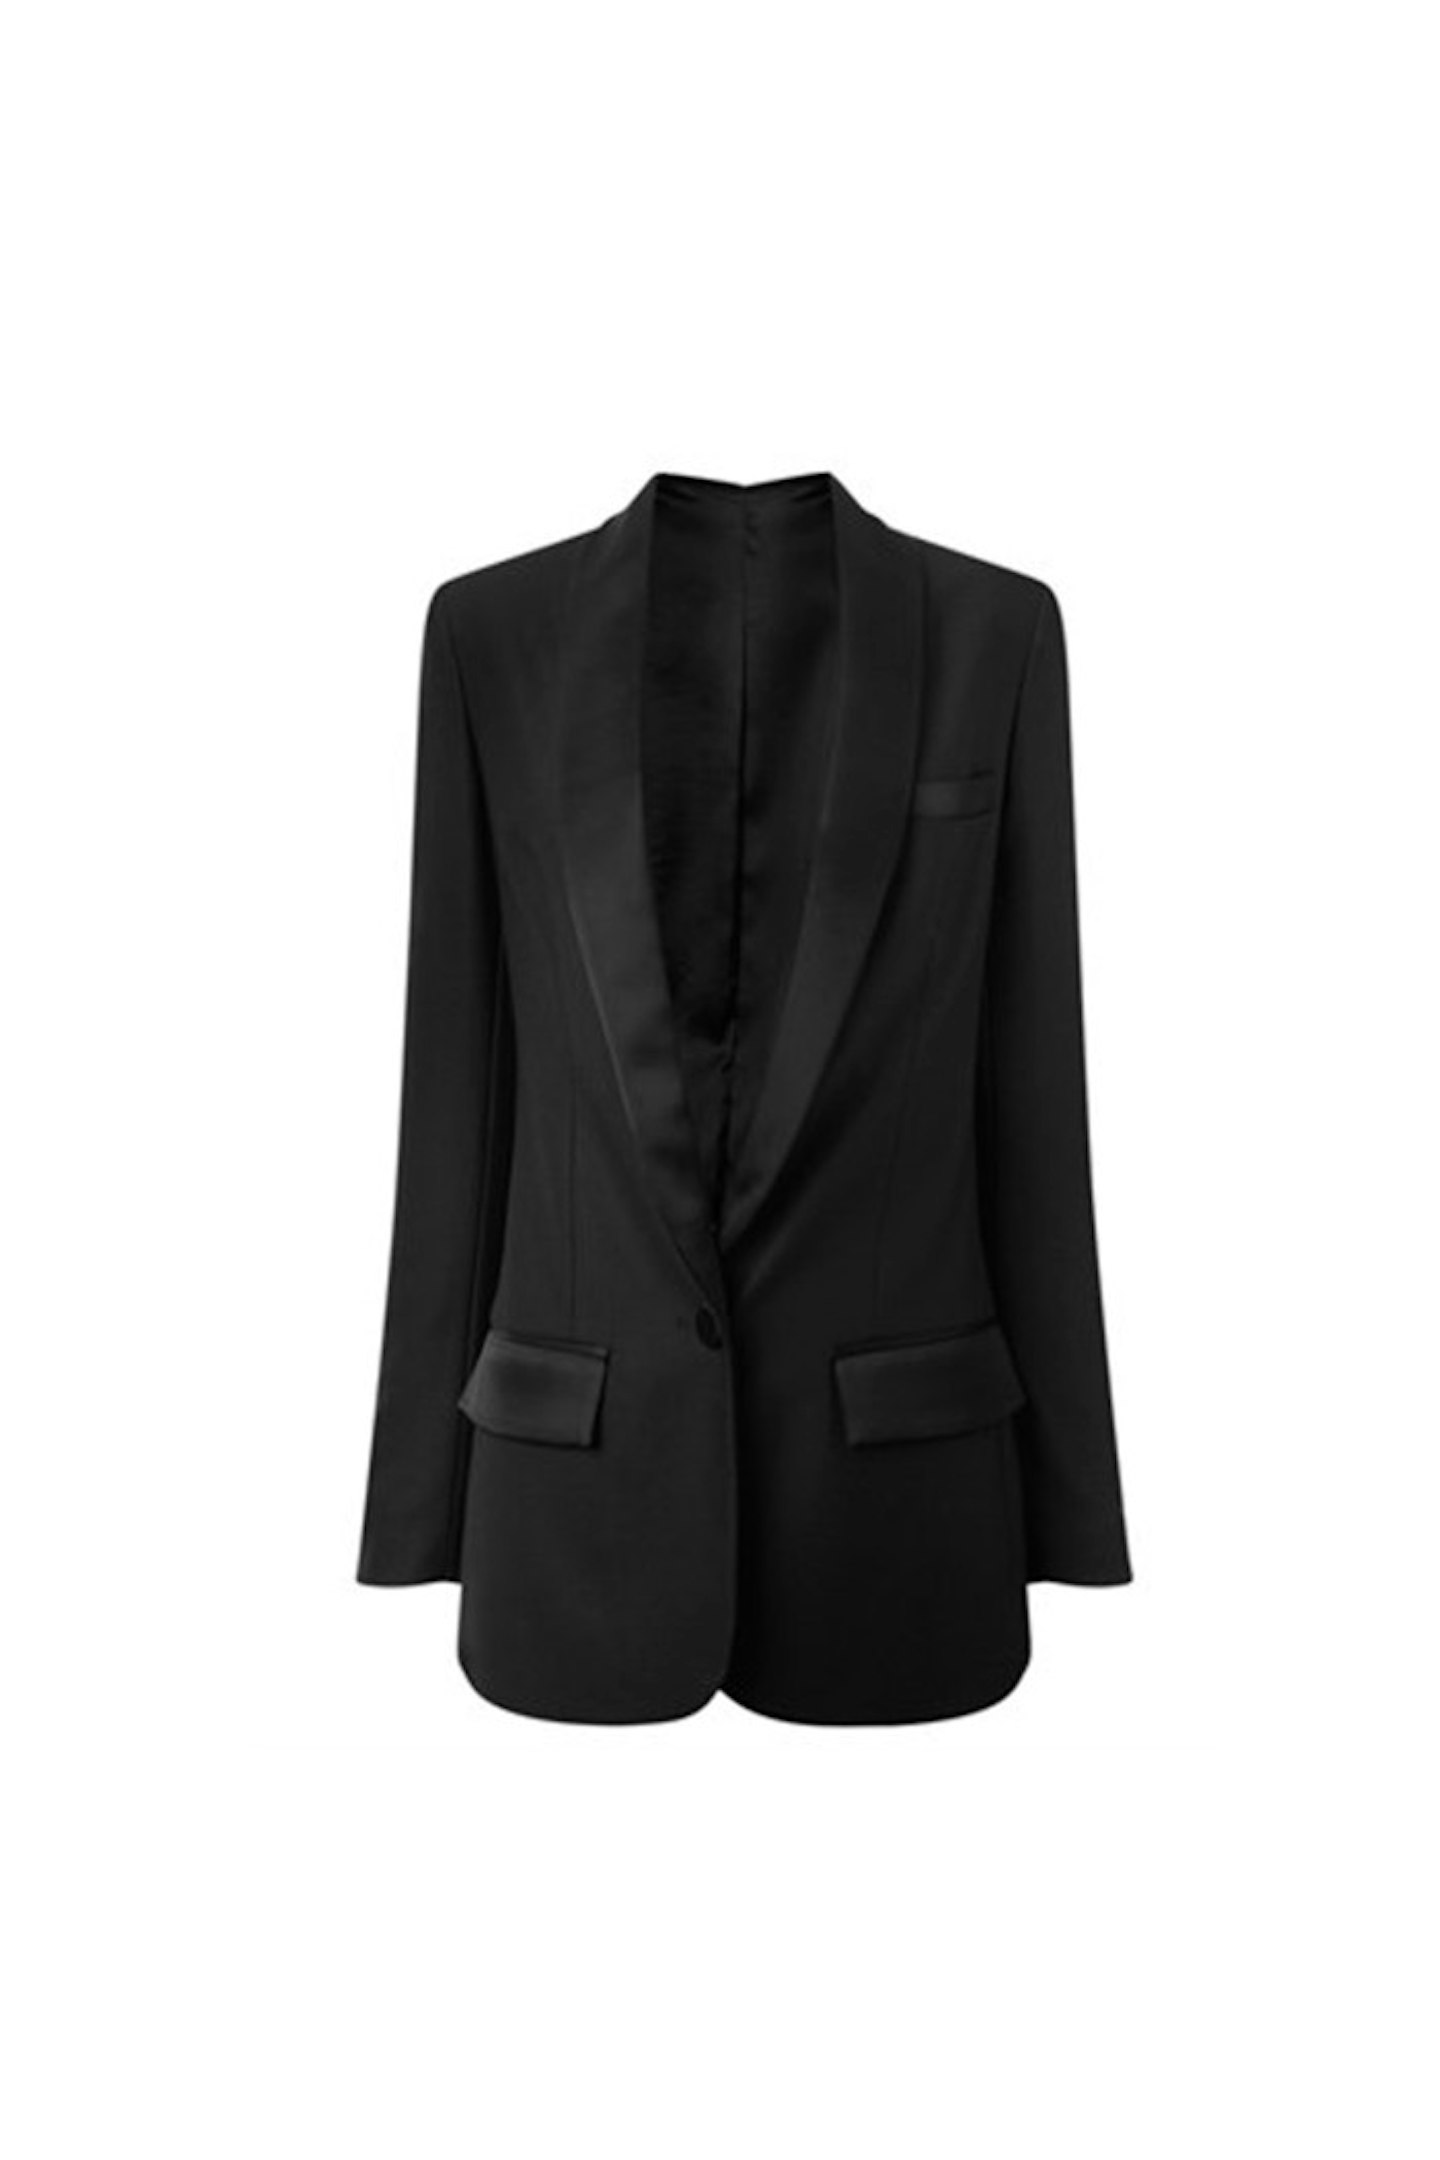 Racil Tuxedo Jacket, £595.00